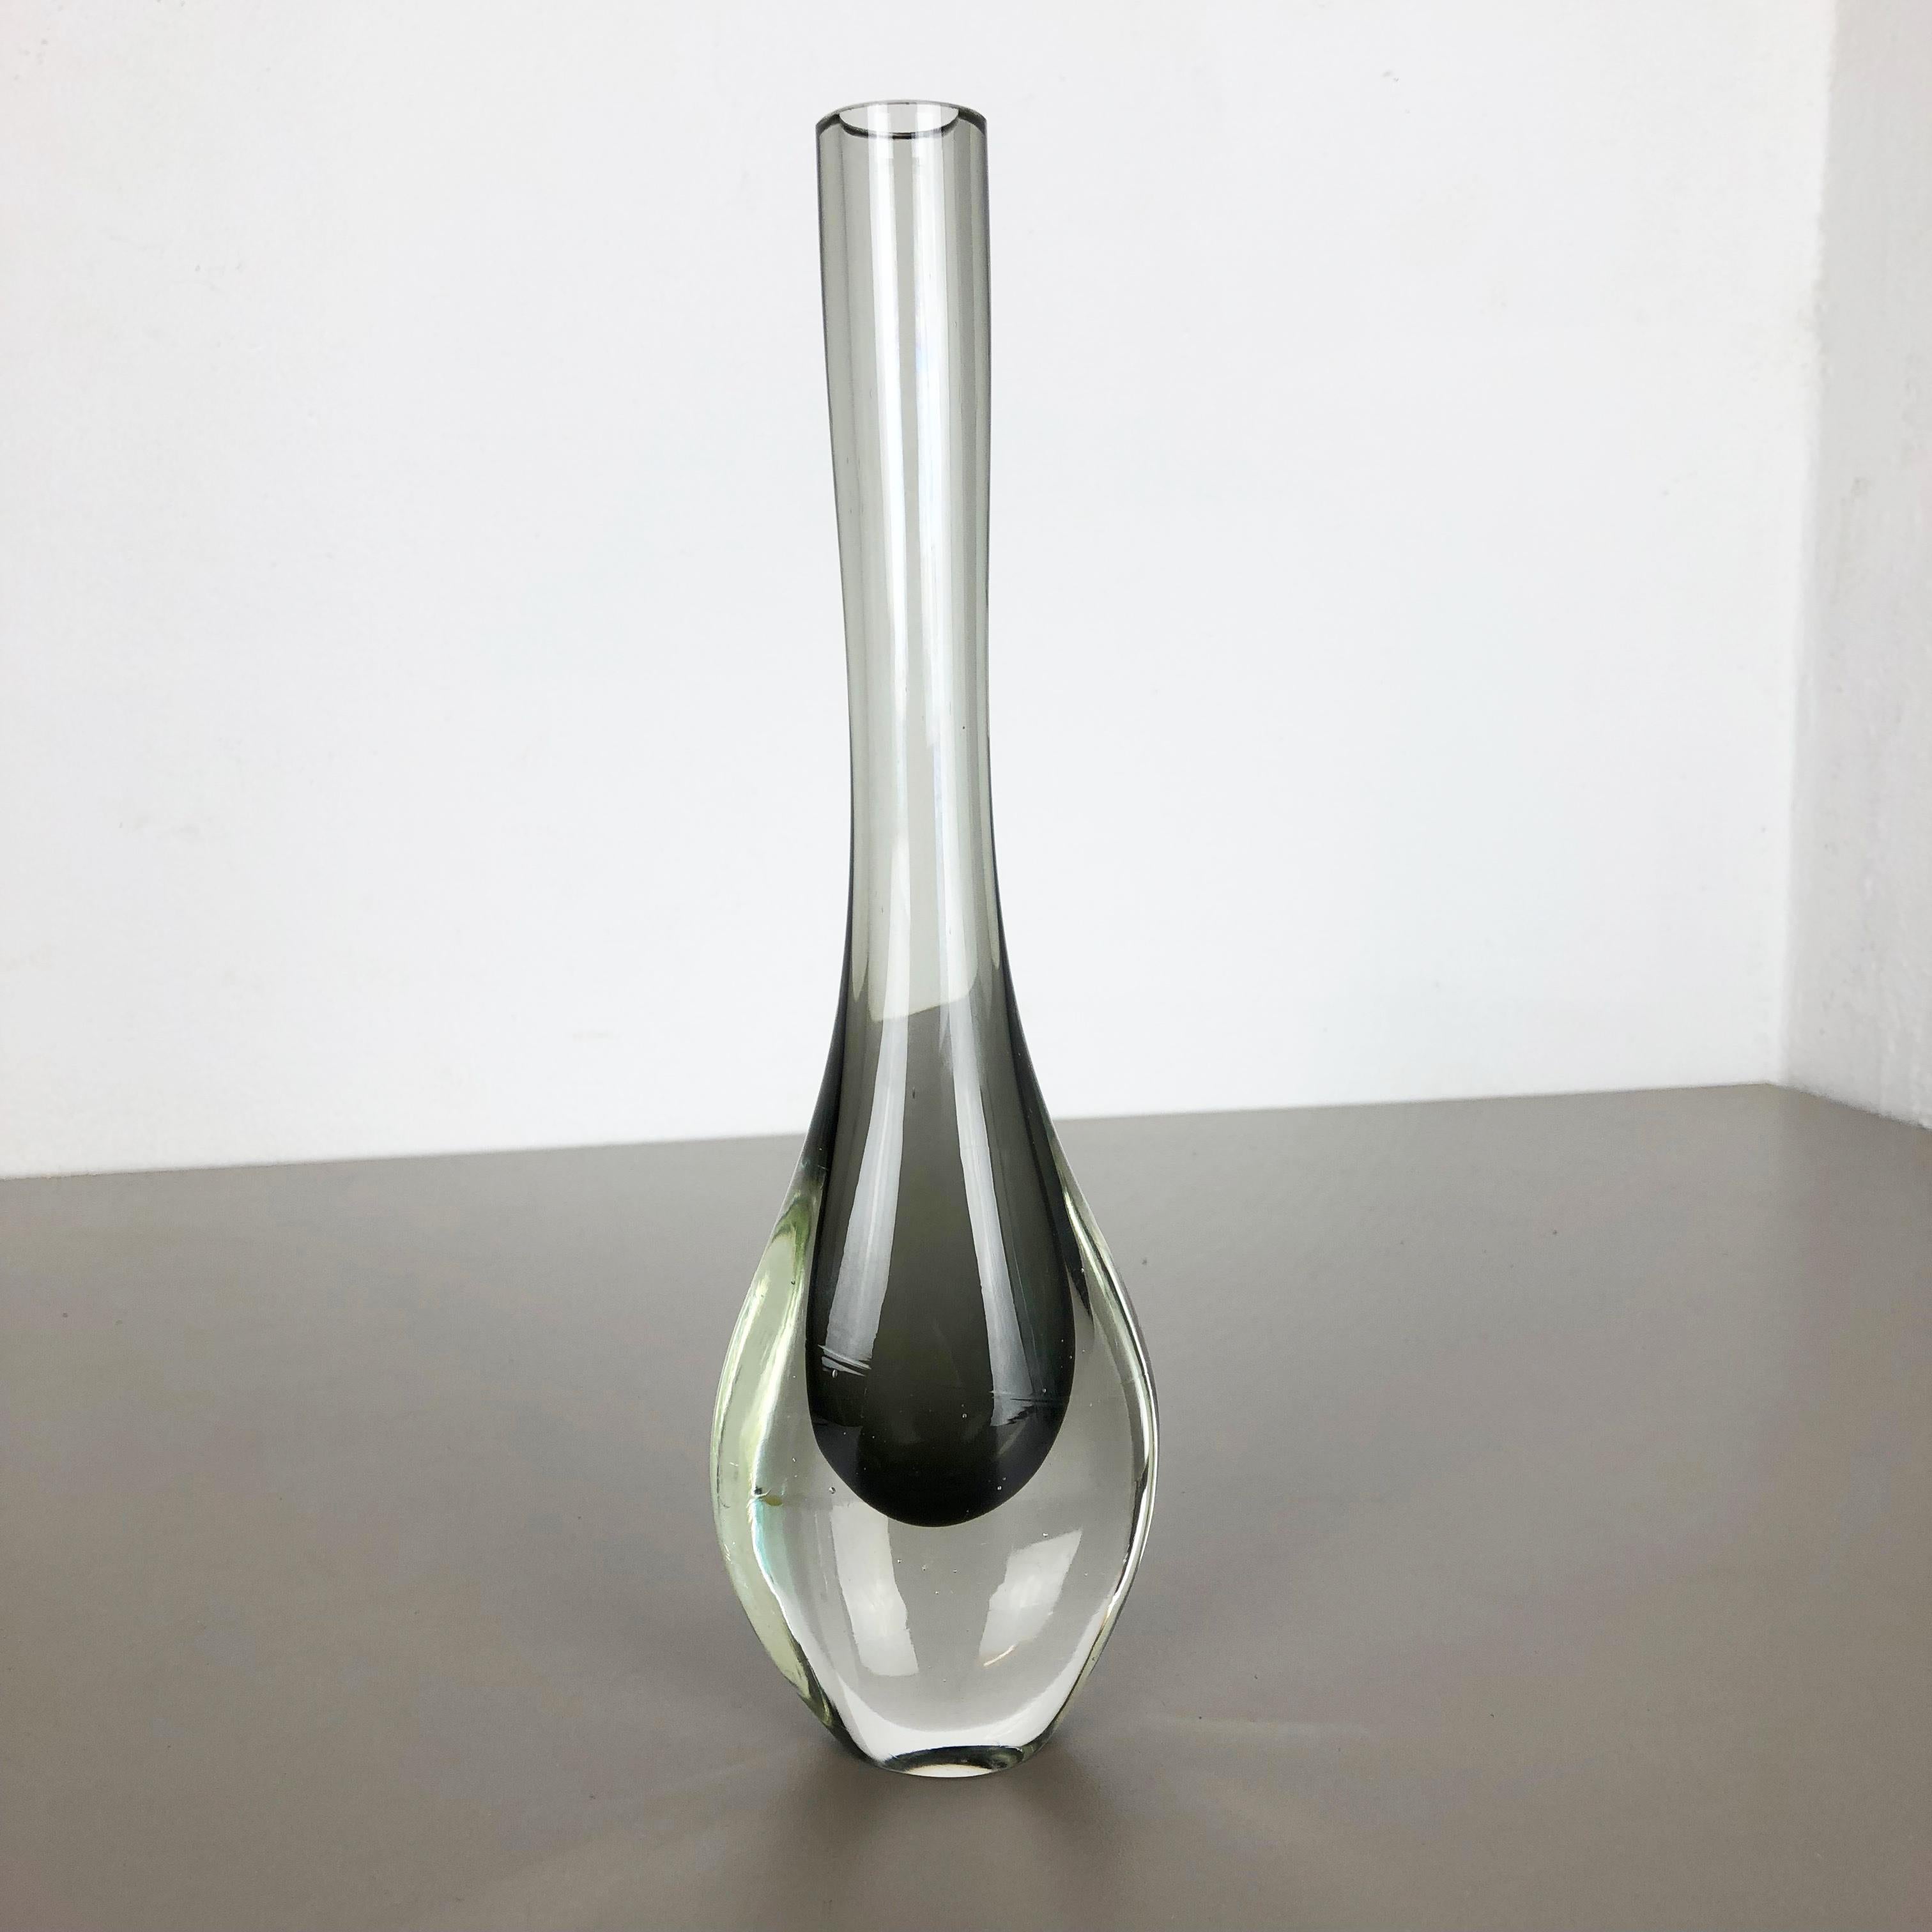 Artikel:

Vase aus Muranoglas

Entwurf:

Flavio Poli


Herkunft:

Murano, Italien


Jahrzehnt:

1970s

Diese originellen Vasen aus Muranoglas wurden in den 1970er Jahren in Italien hergestellt. Diese elegante, von Flavio Poli